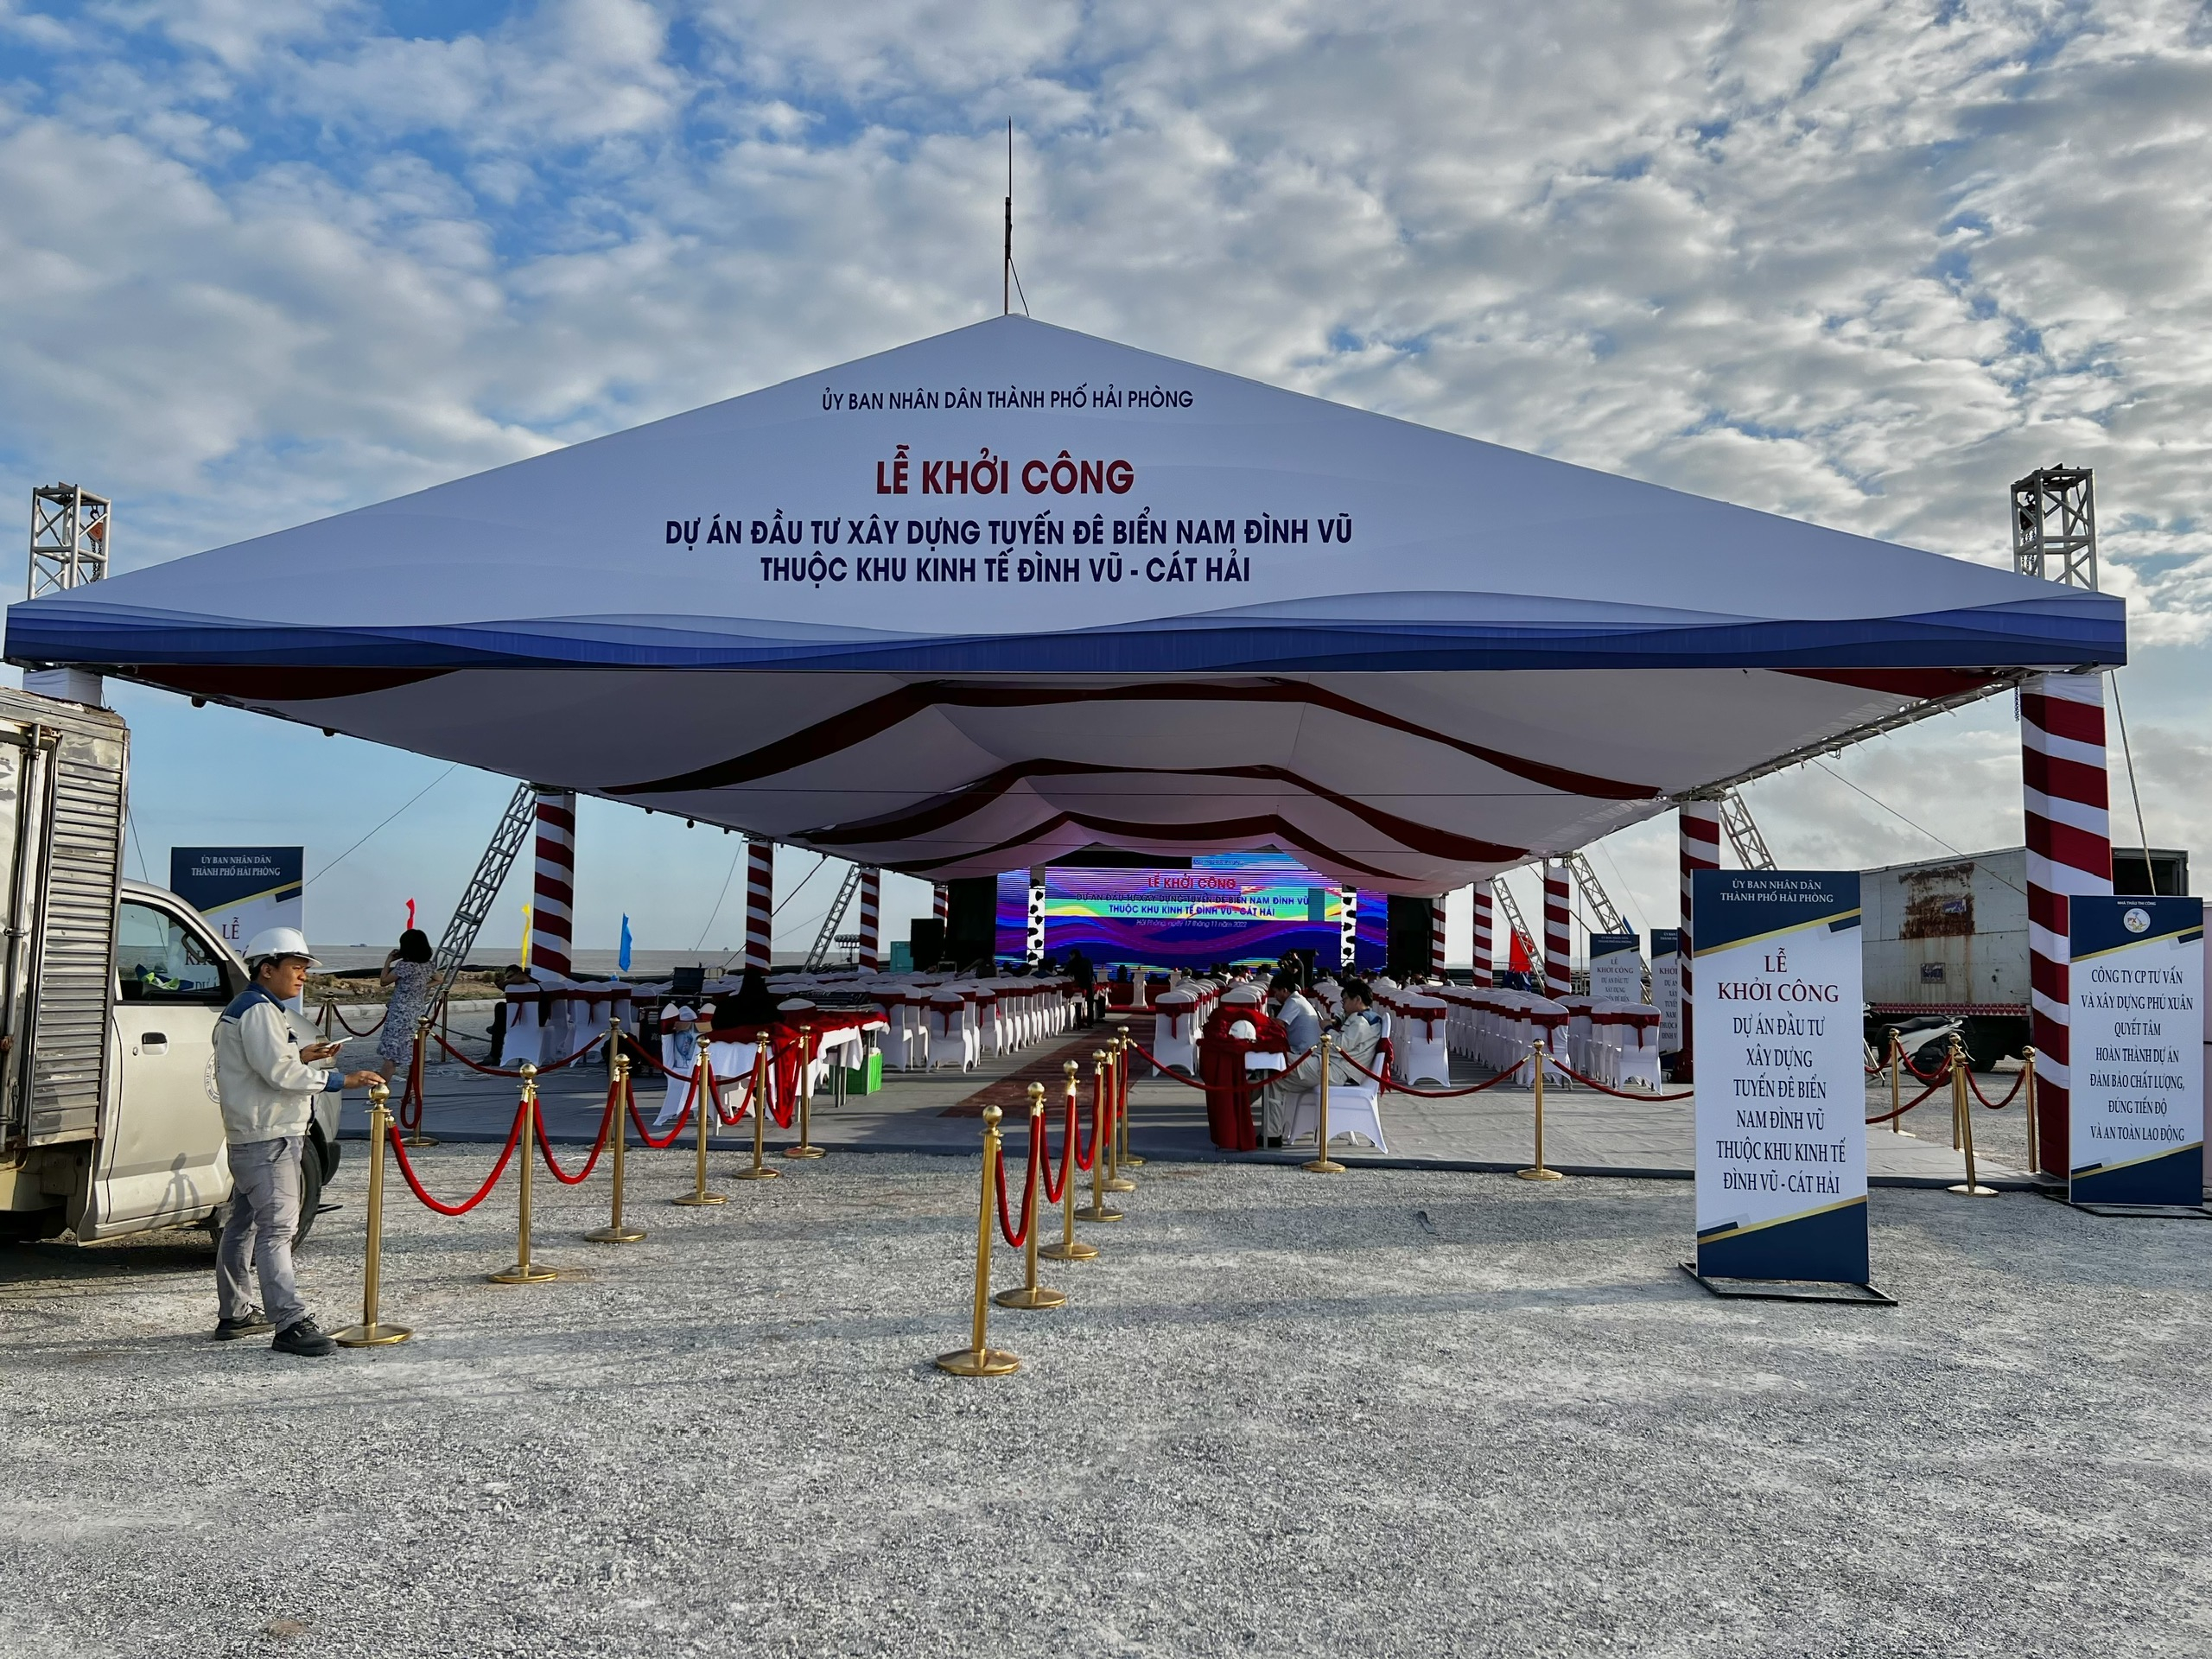 Khu vực tổ chức Lễ khởi công Dự án đầu tư xây dựng tuyến đê biển Nam Đình Vũ.